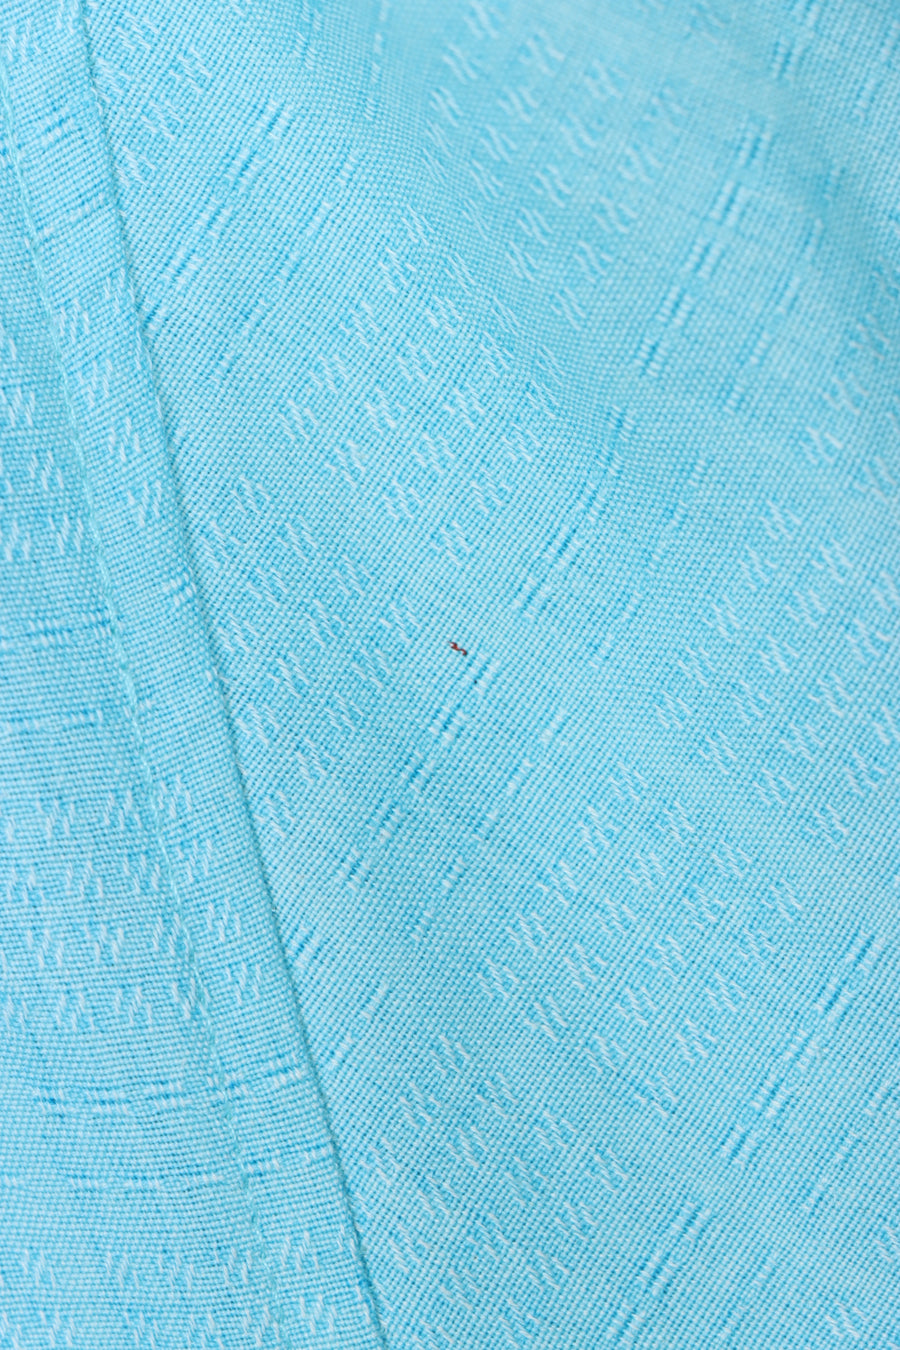 JAMAICA JAXX Blue Silk Embossed Short Sleeve Shirt (XL)